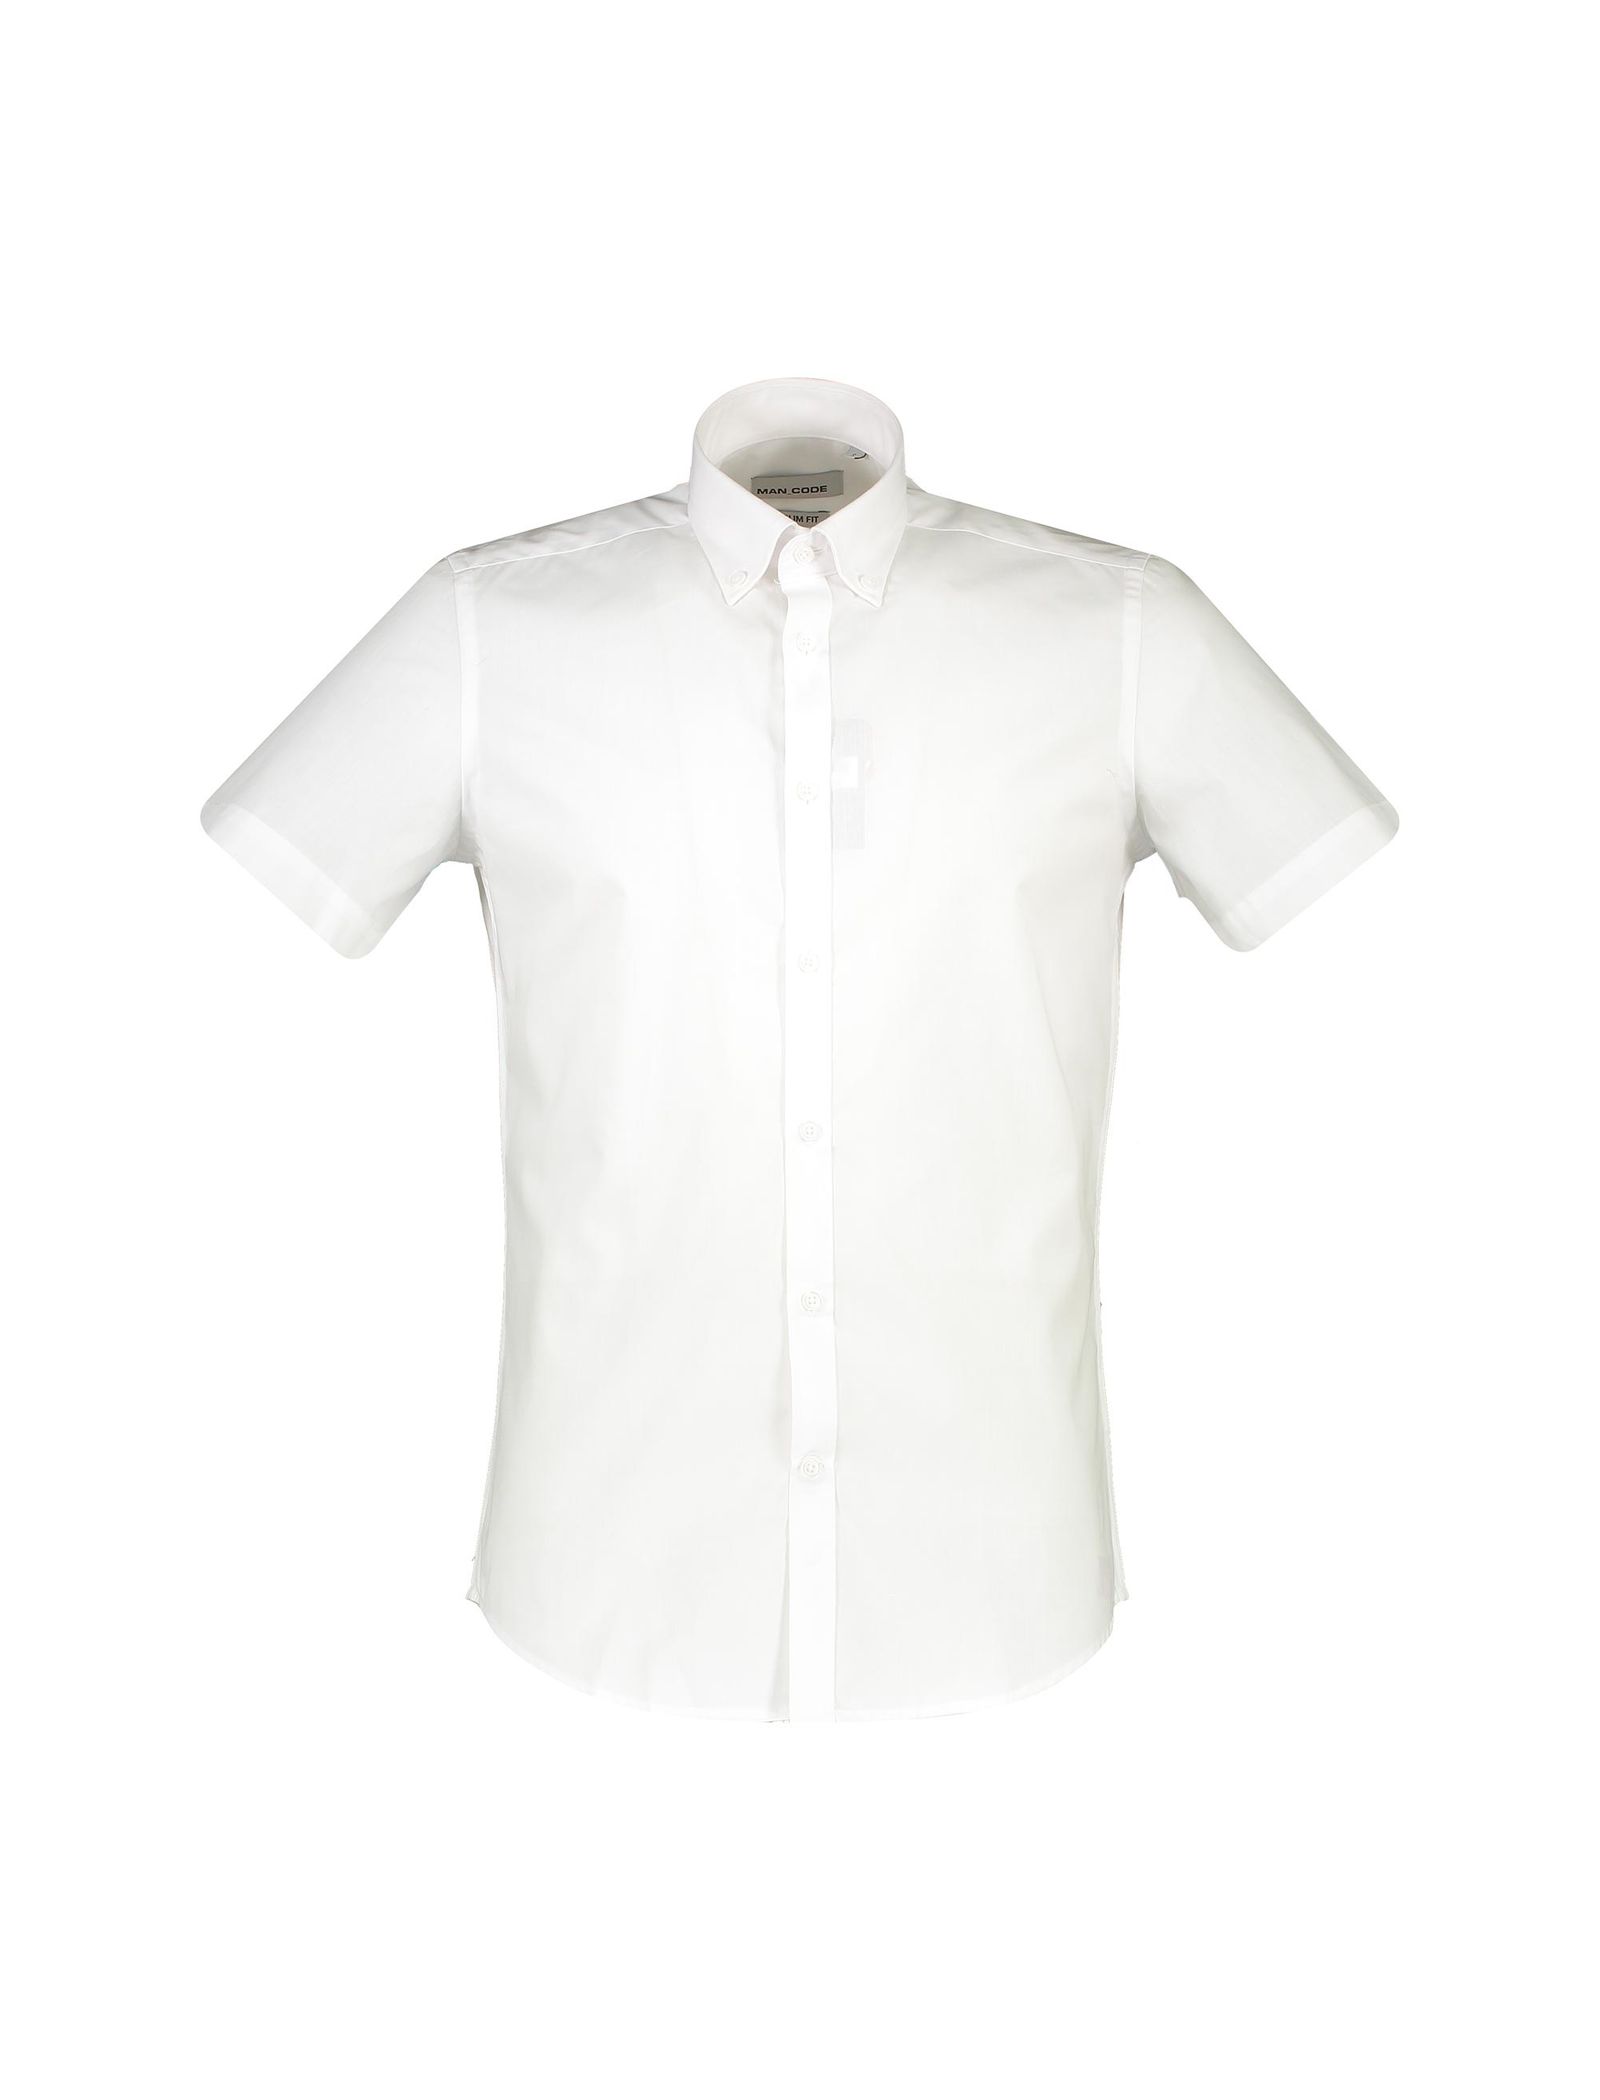 پیراهن آستین کوتاه مردانه - یوپیم - سفيد - 1